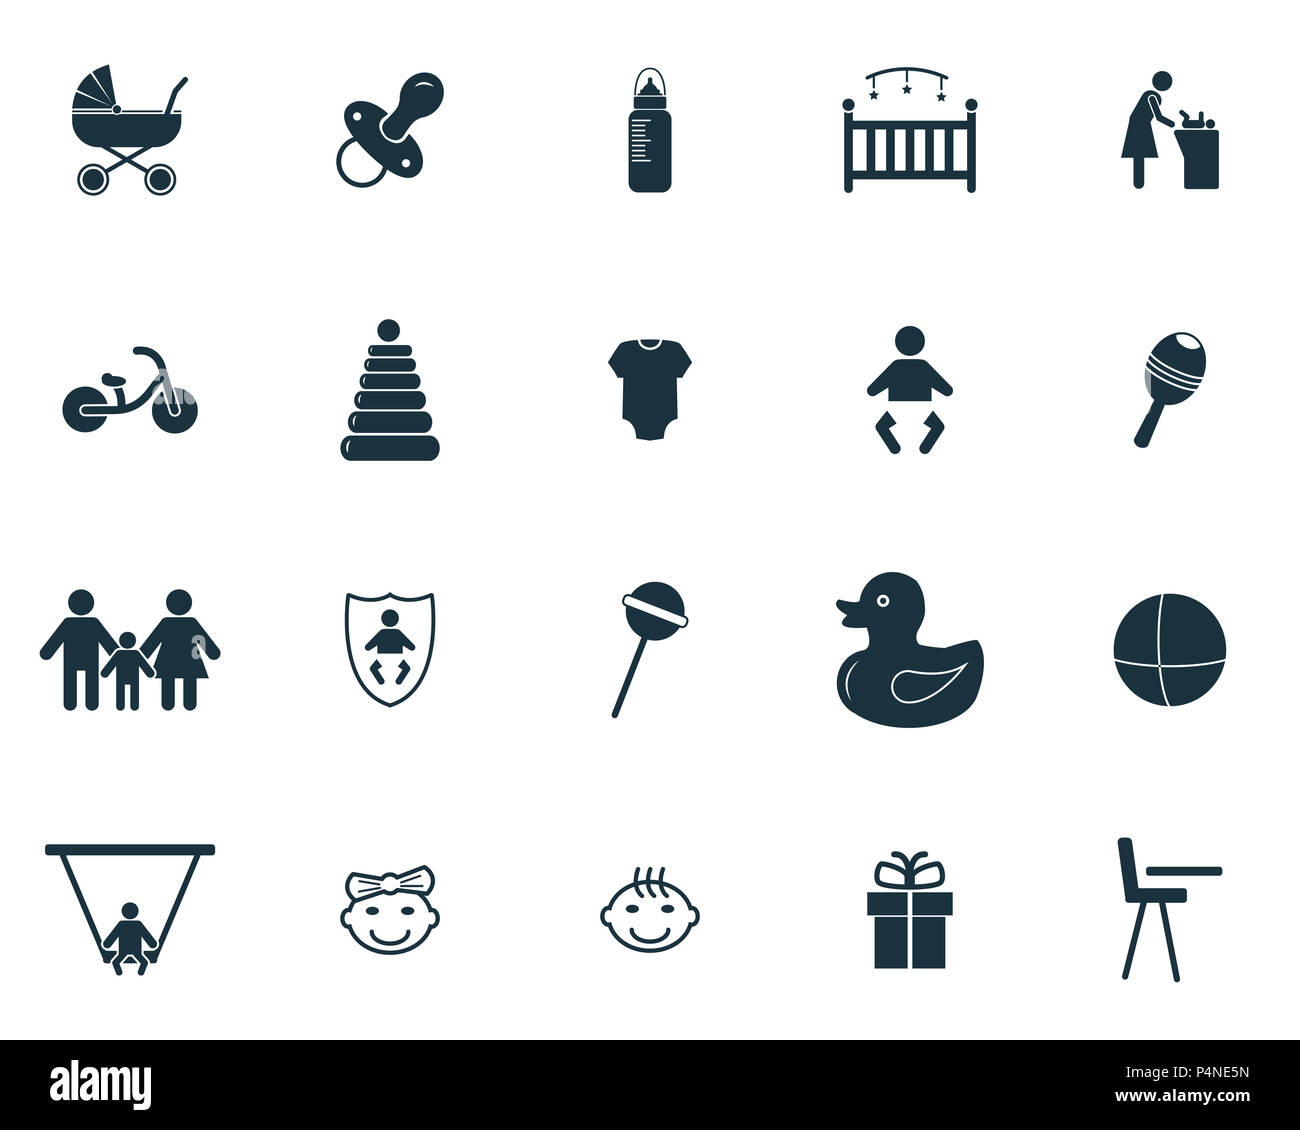 Baby Symbole gesetzt. Premium Qualität symbol Collection. Baby Icon Set  einfache Elemente Stockfotografie - Alamy